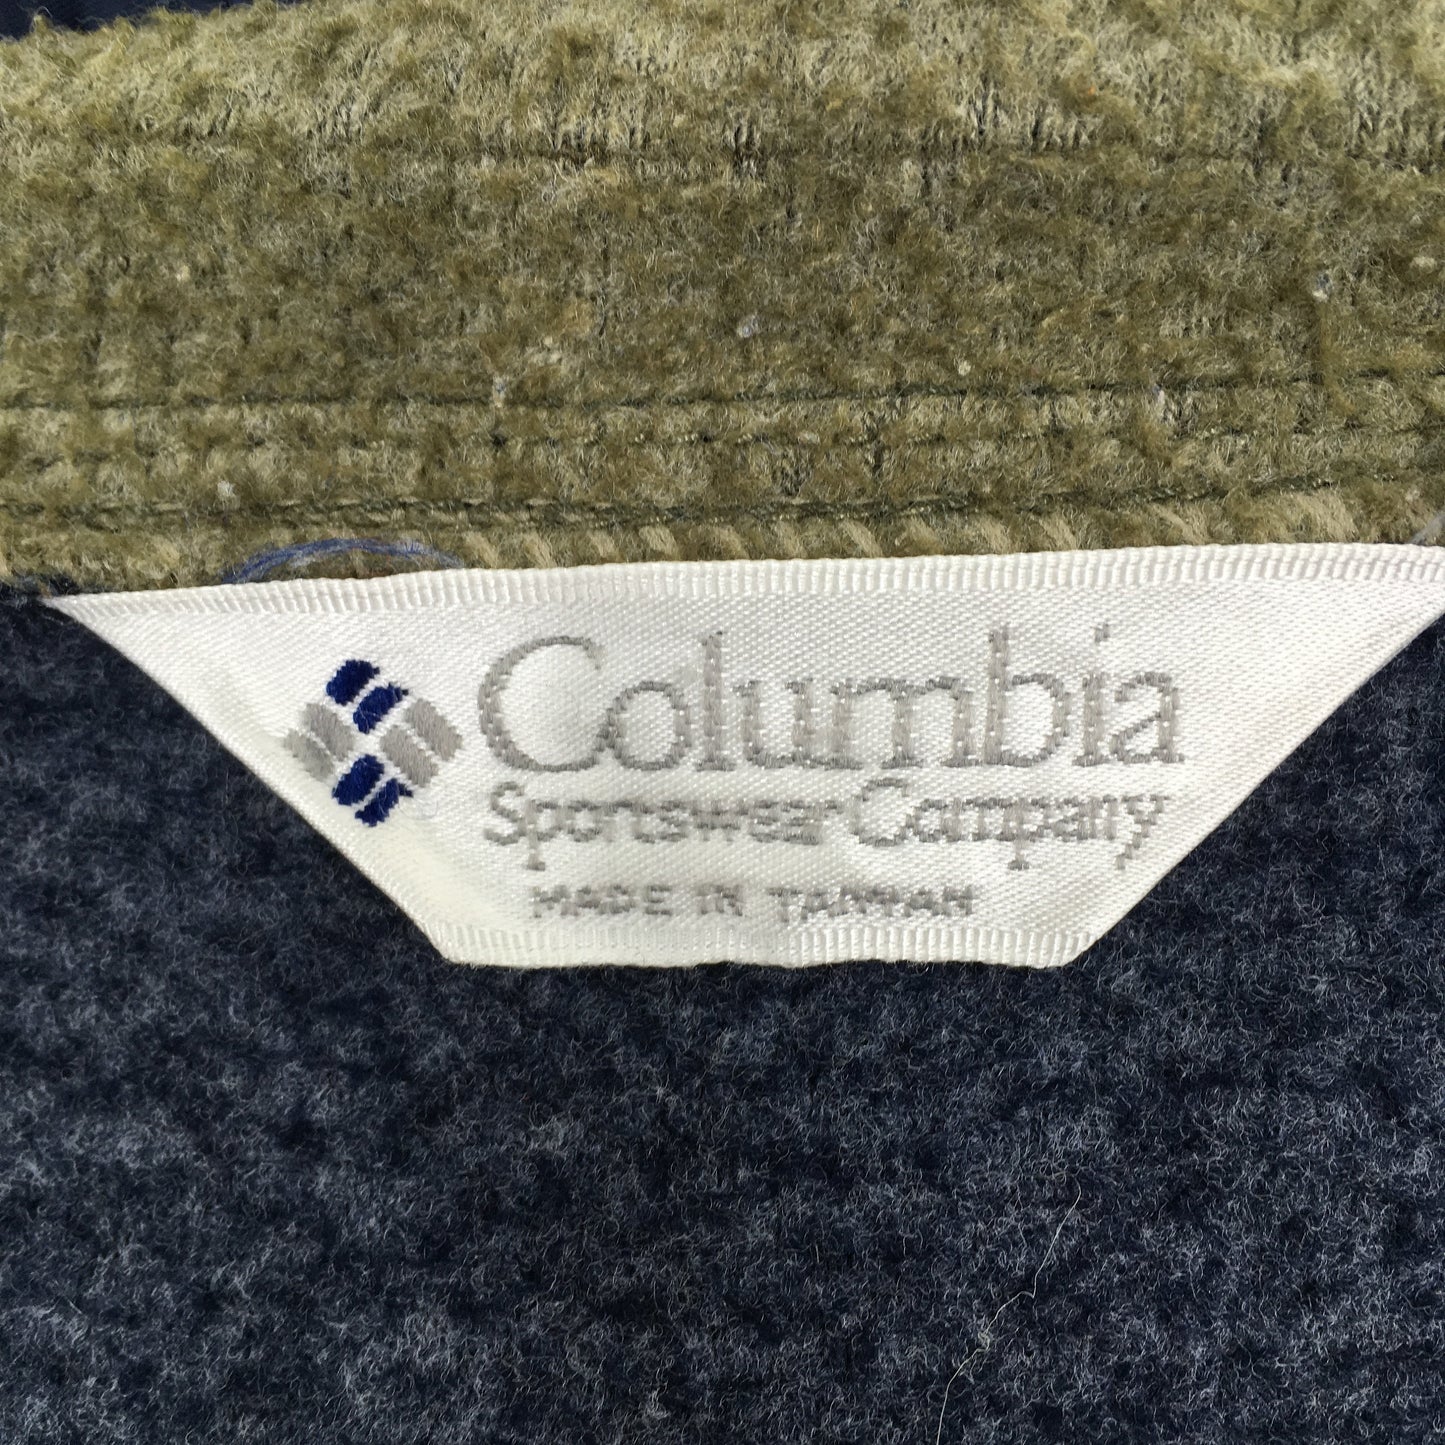 Columbia Sportswear Fleece Hoodie